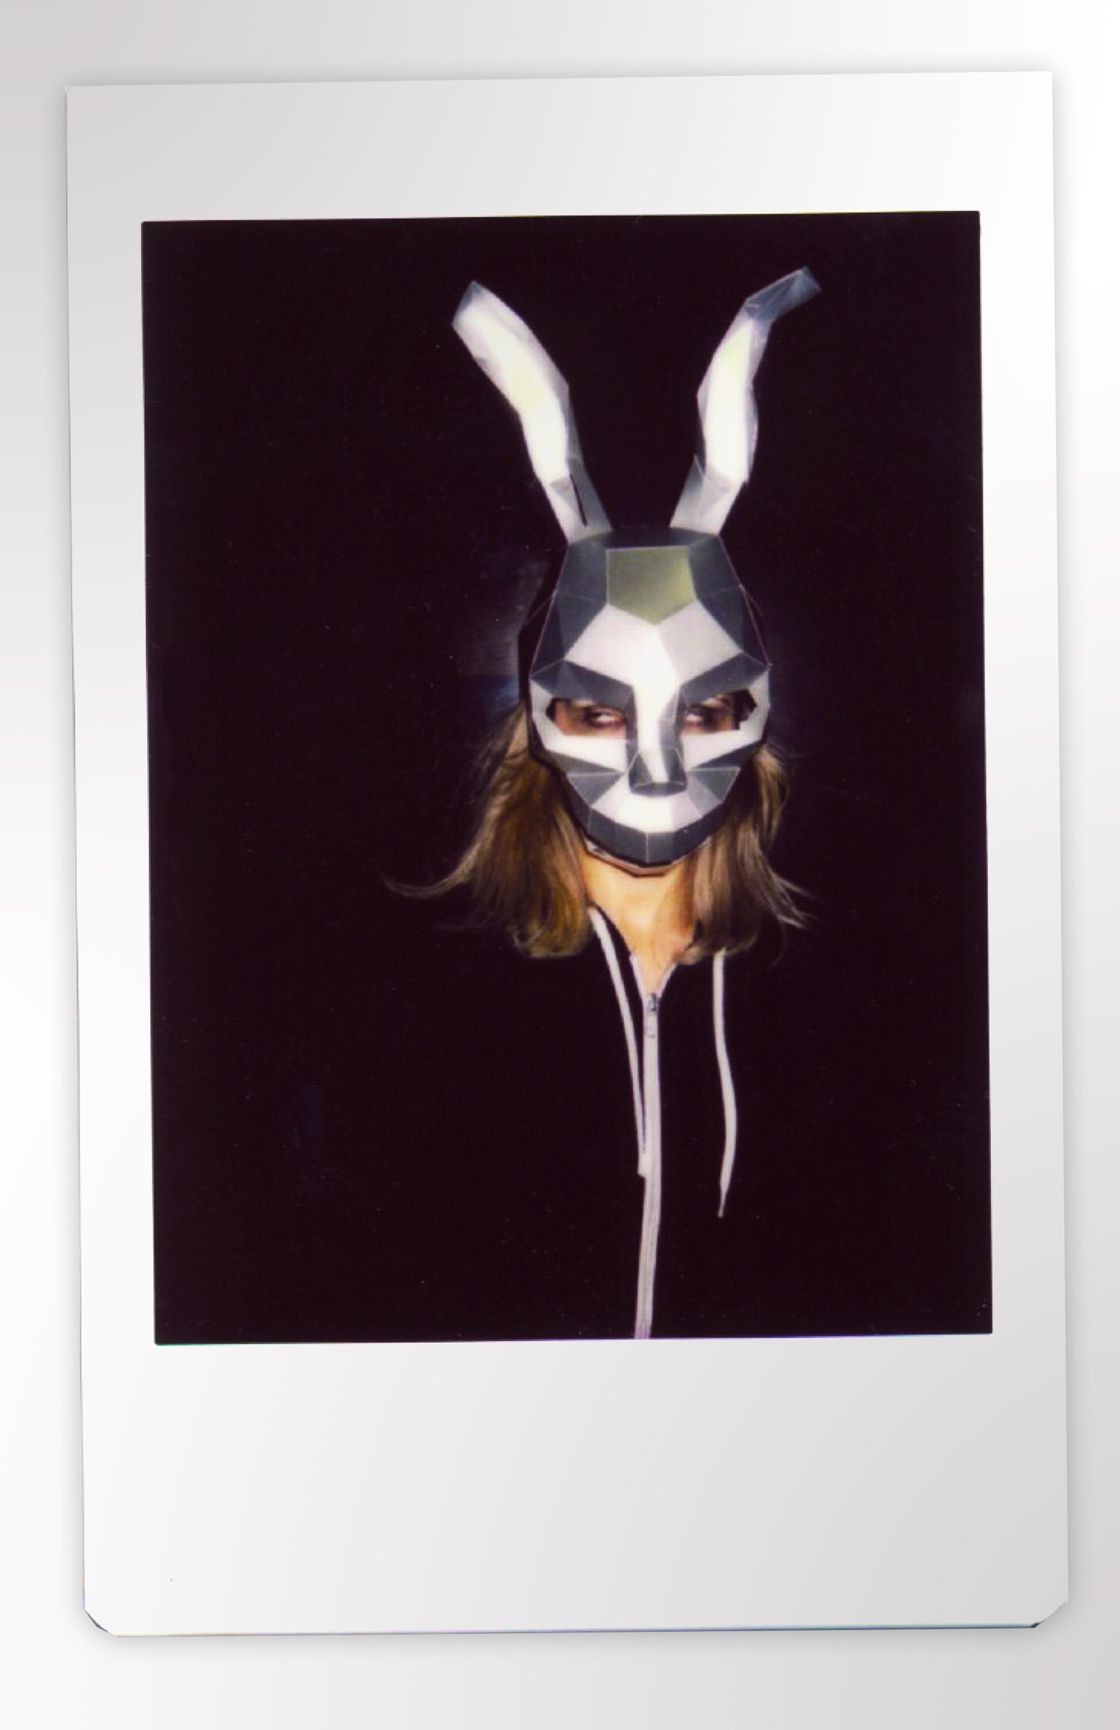 Helmet Papercraft Frank Rabbit Mask Donnie Darko Mask Hare Mask Diy 3dmask Pdf Paper